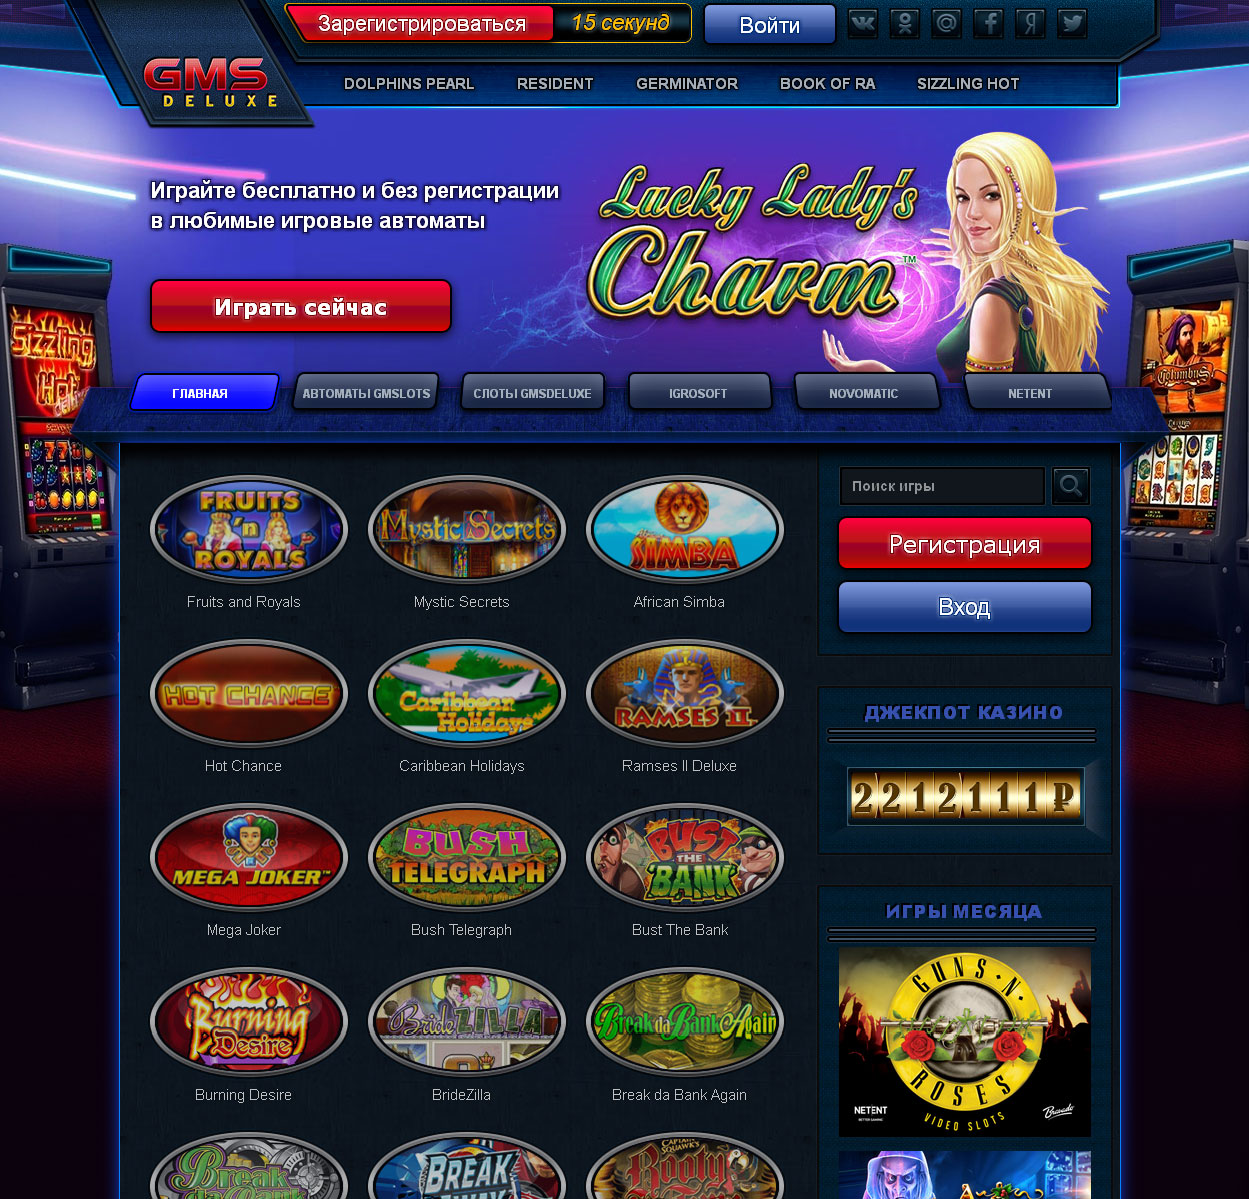 Азартные игровые автоматы бесплатно без регистрации онлайн играть на биткоин в azinobtc ставки на спорт в беларуси через телефон